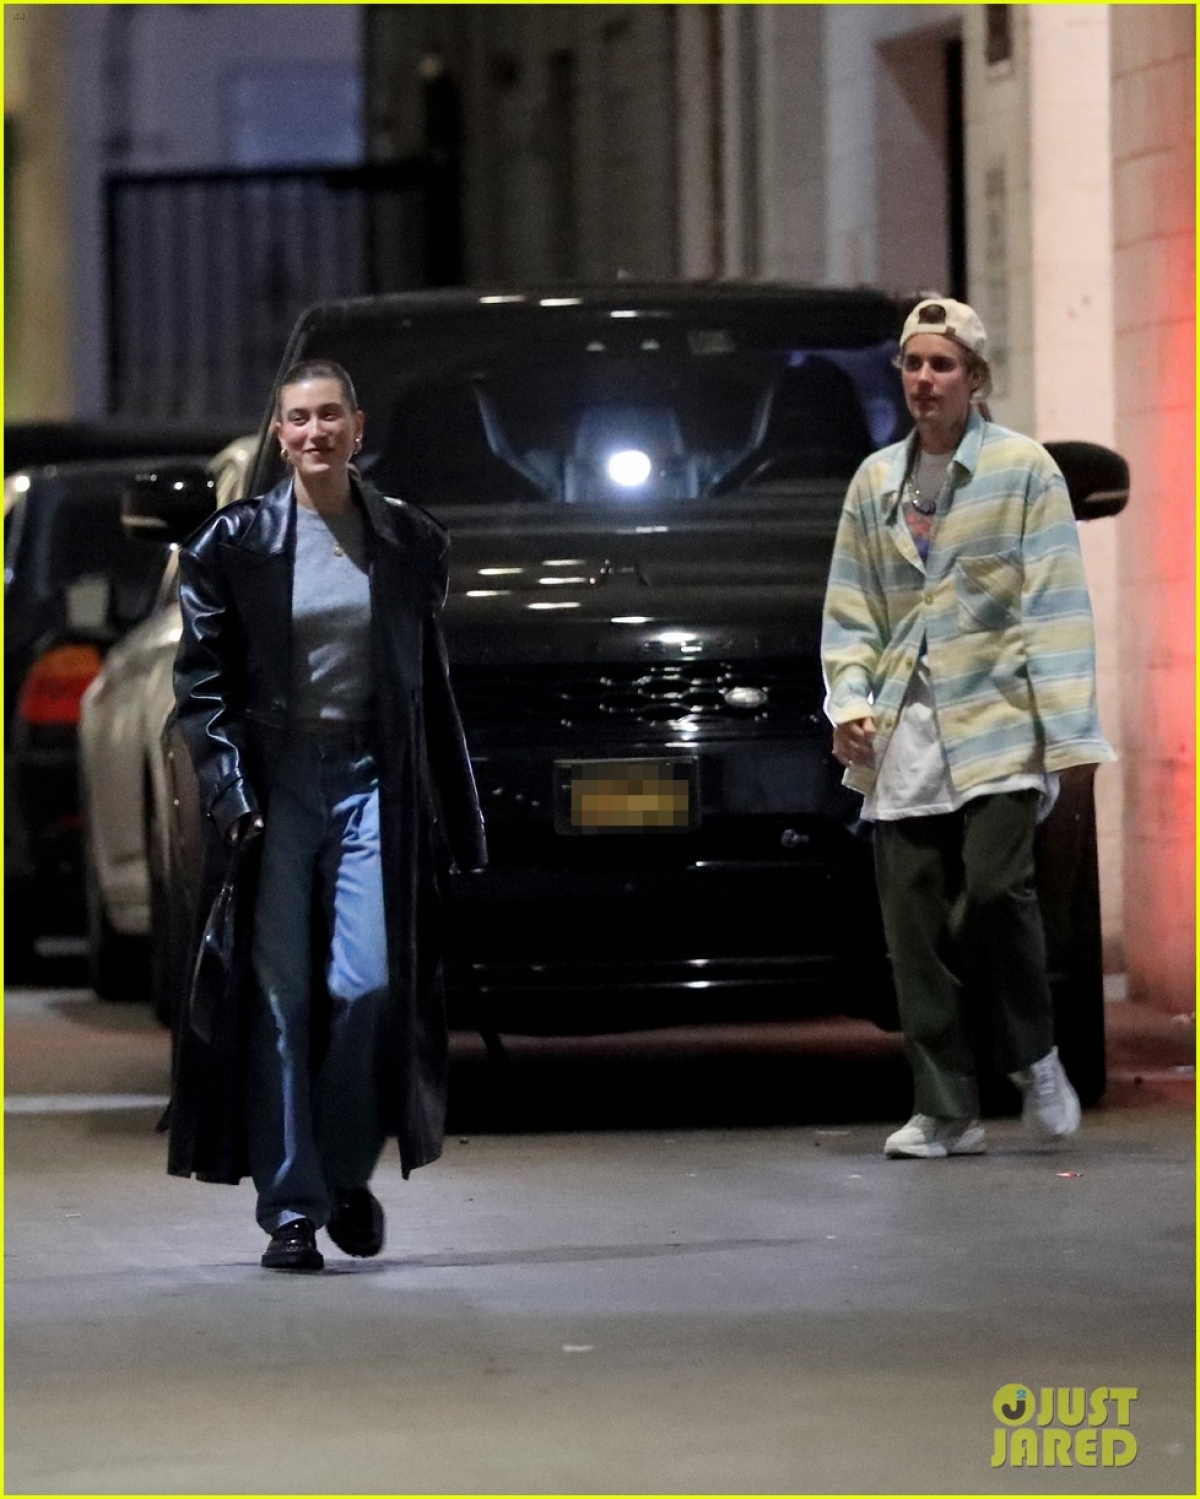 Justin Bieber mặc đồ luộm thuộm đi ăn tối cùng vợ - Ảnh 3.